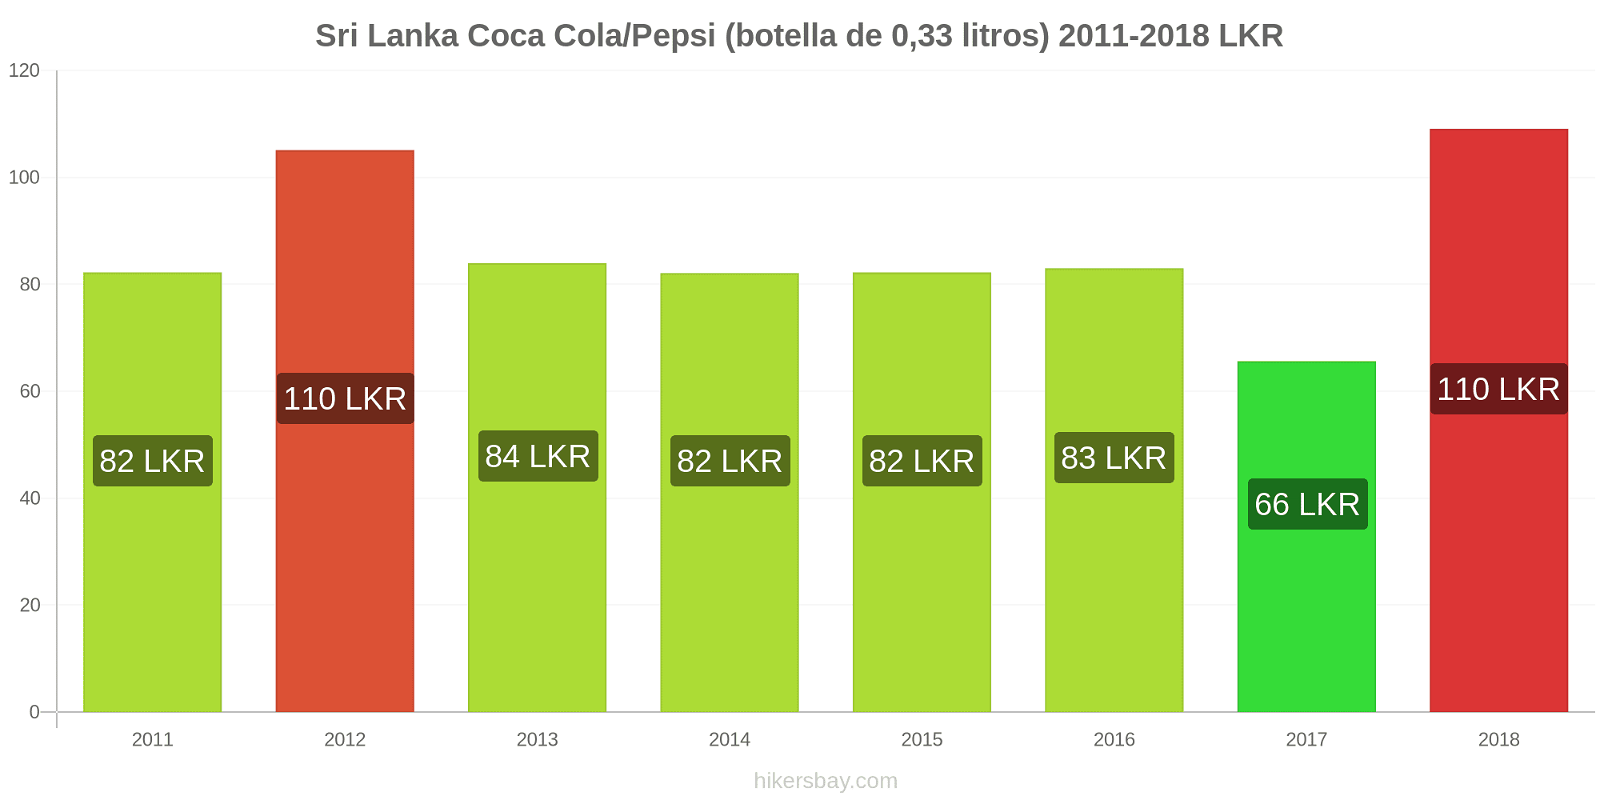 Sri Lanka cambios de precios Coca-Cola/Pepsi (botella de 0.33 litros) hikersbay.com